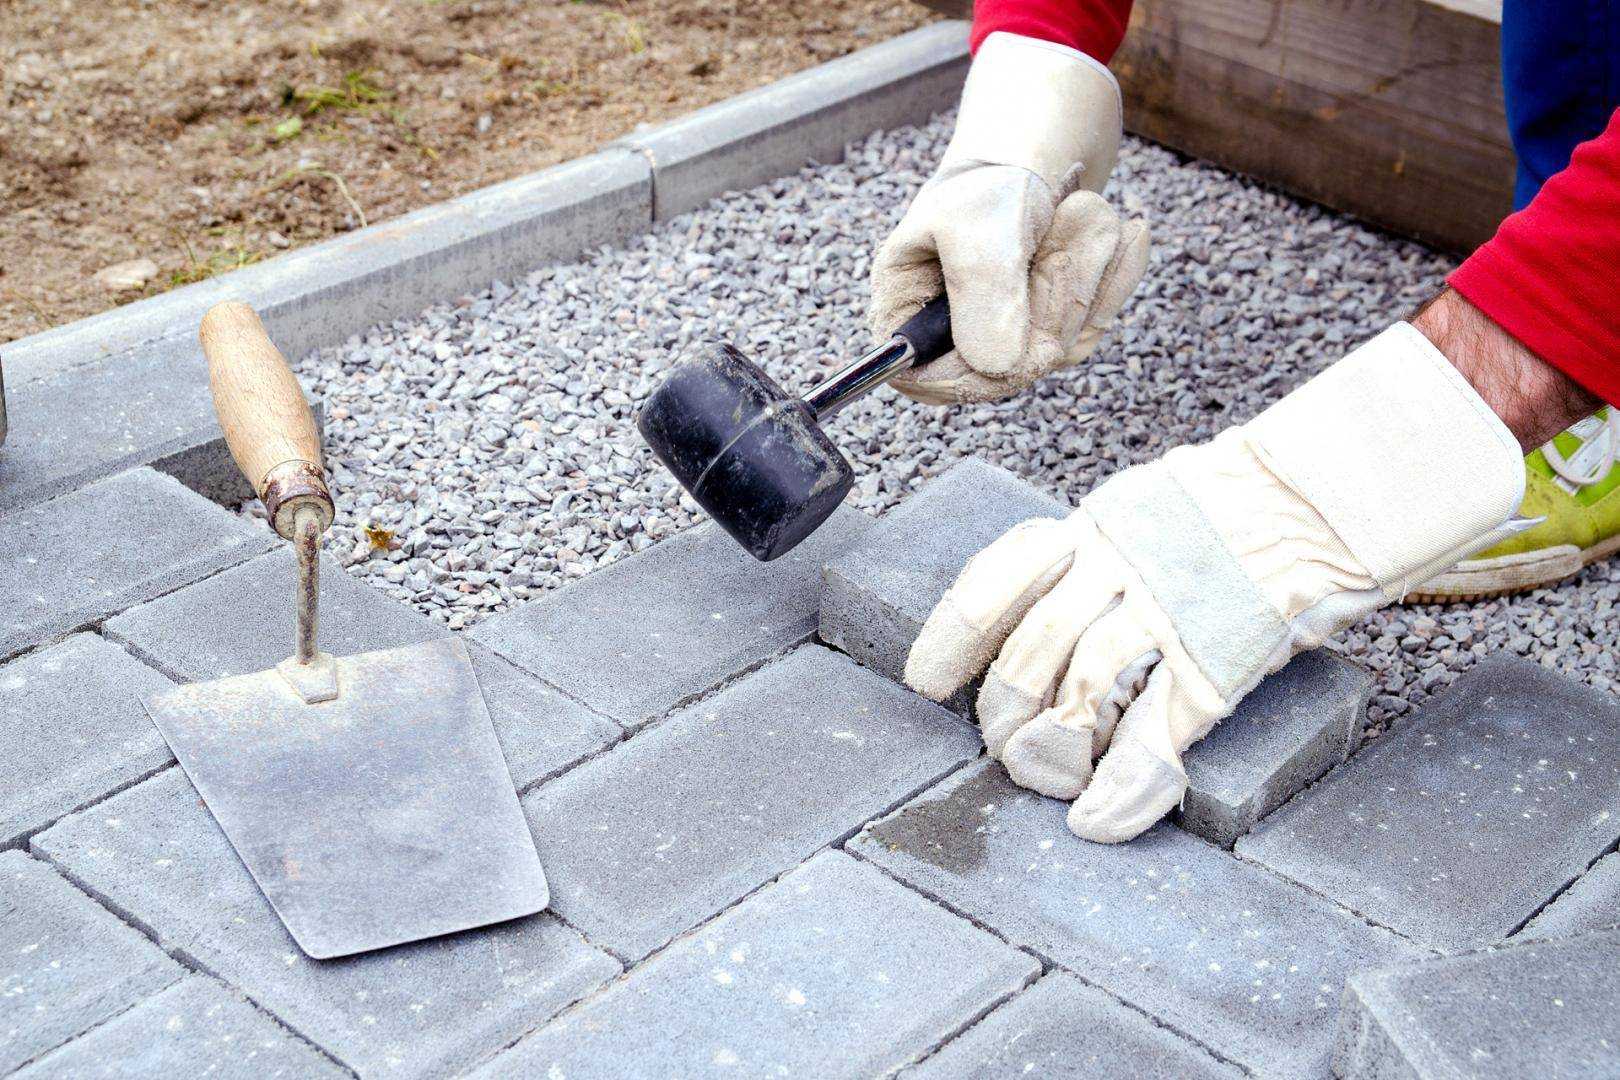 Укладка брусчатки - технология монтажа своими руками на разное основание ( бетонное, песок и другое )